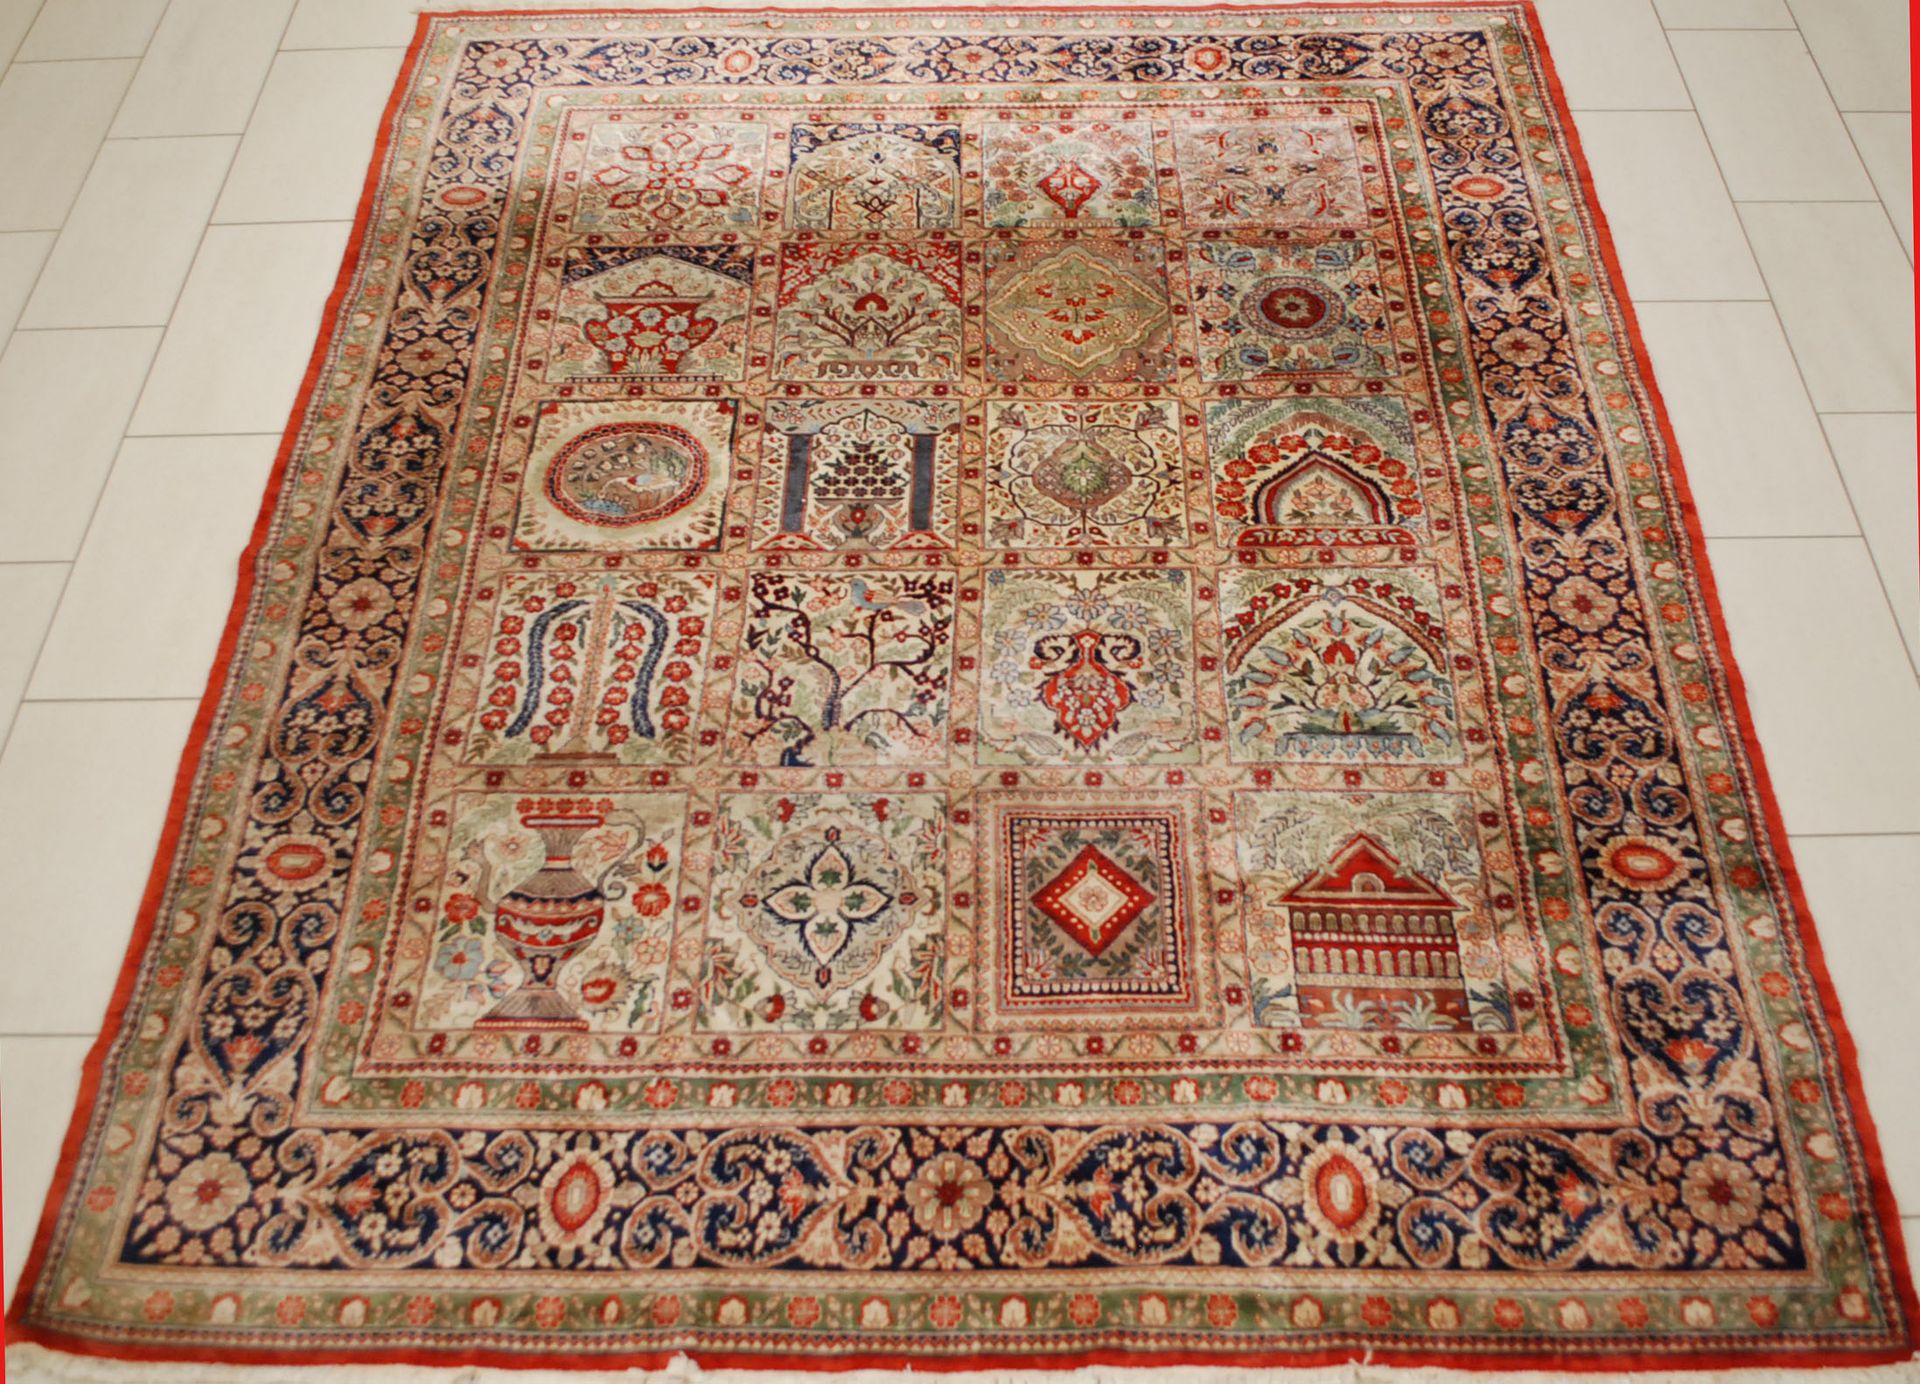 Travail iranien. Goum-Teppich aus 100 % Seide.

Größe: 296 x 244 cm.